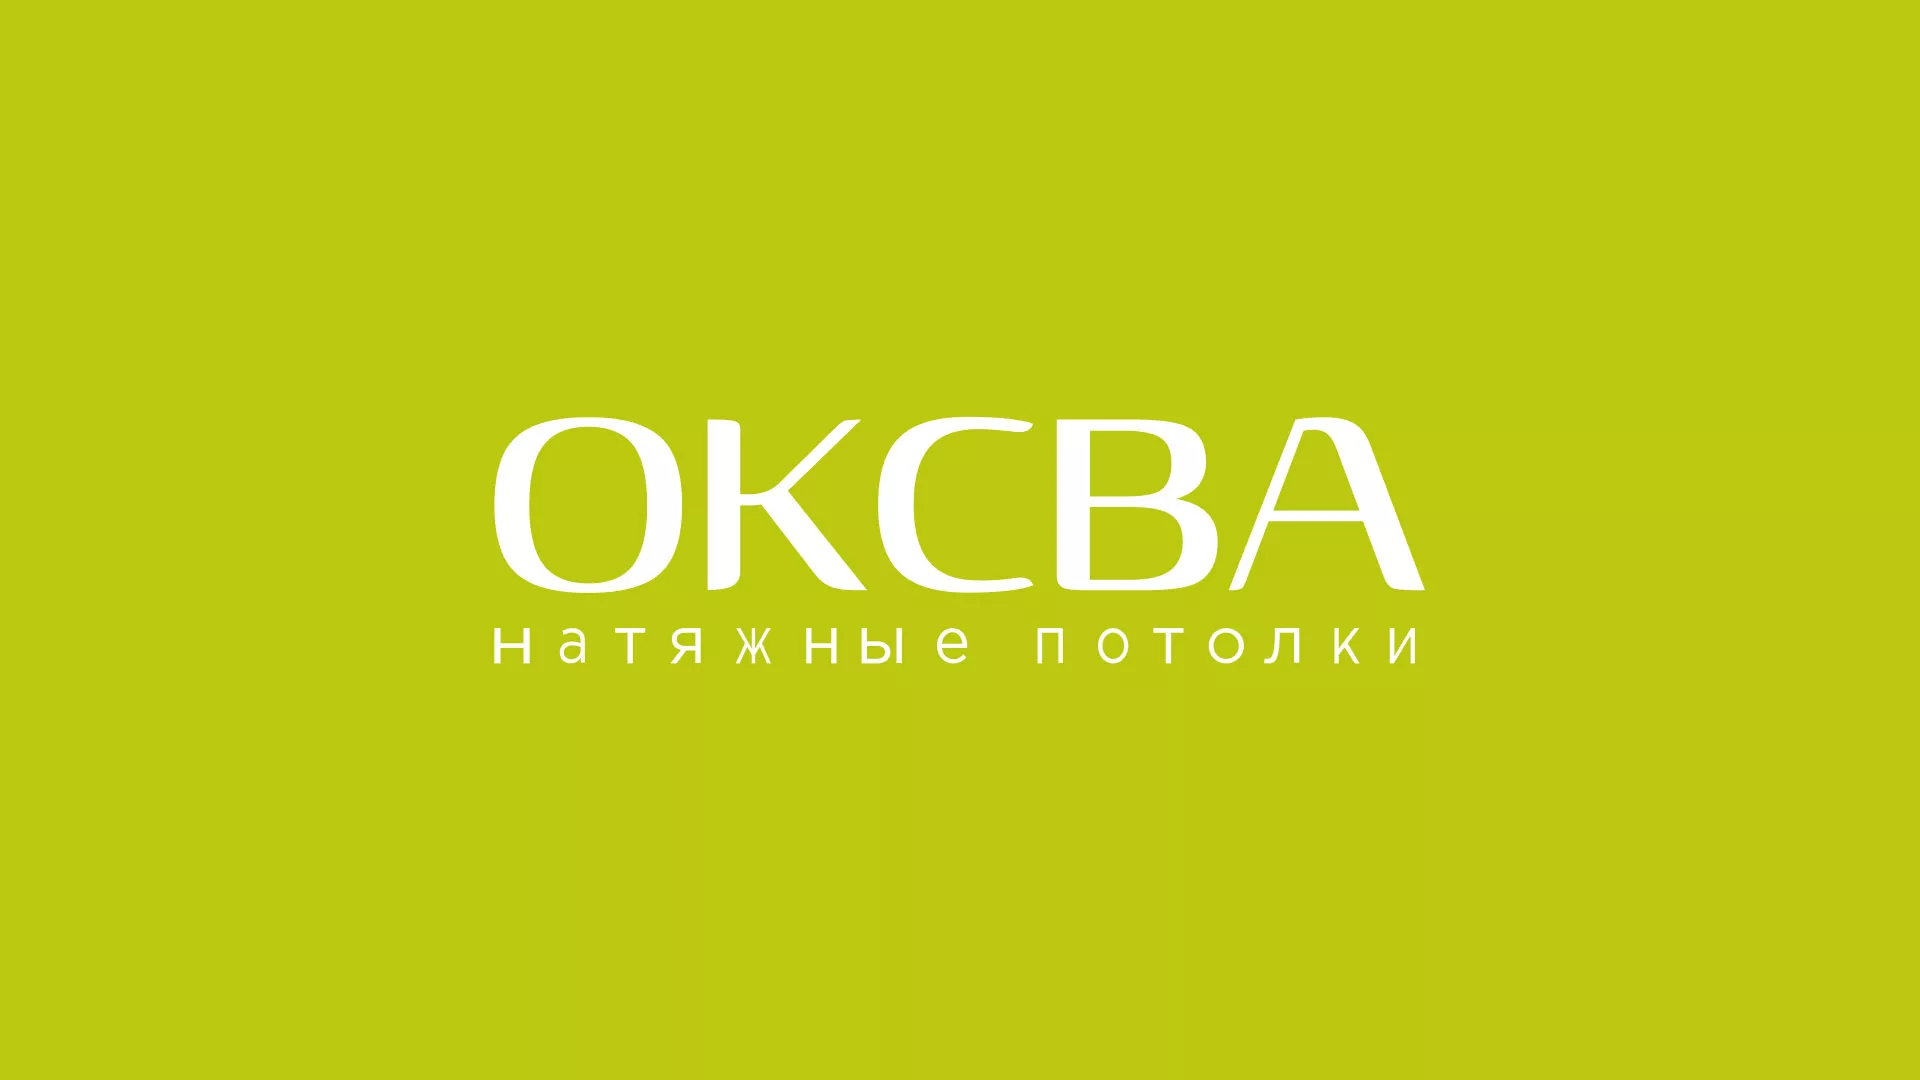 Создание сайта по продаже натяжных потолков для компании «ОКСВА» в Шебекино